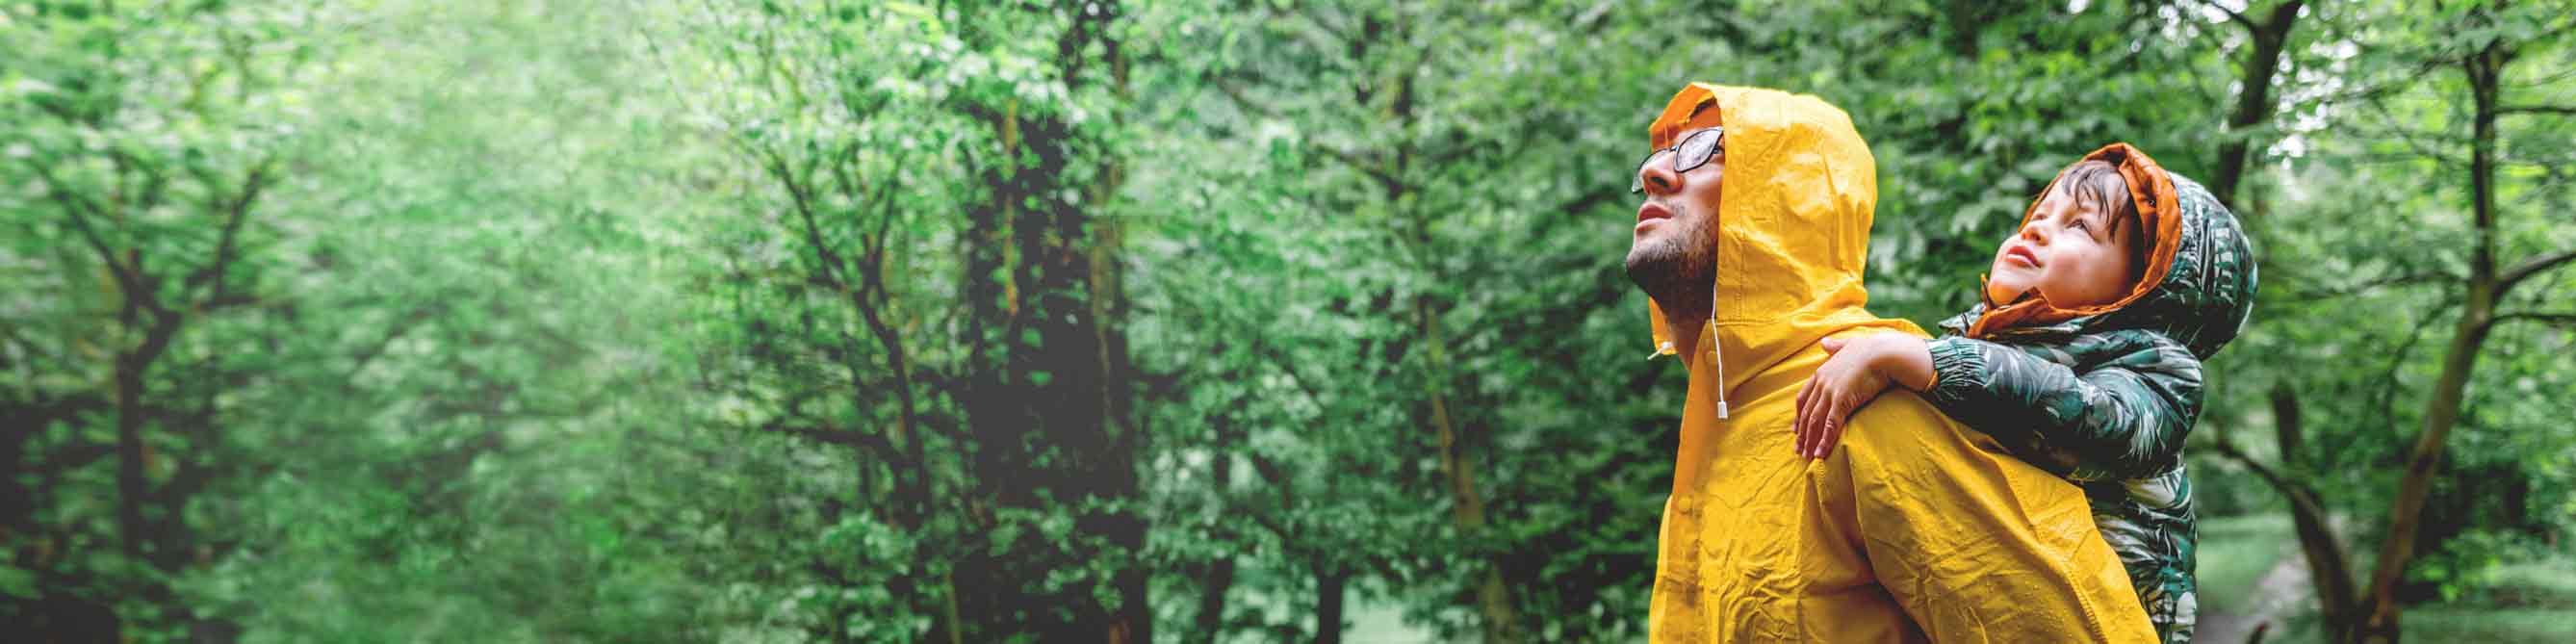 Mann mit Kind auf dem Rücken im Wald bei Regen